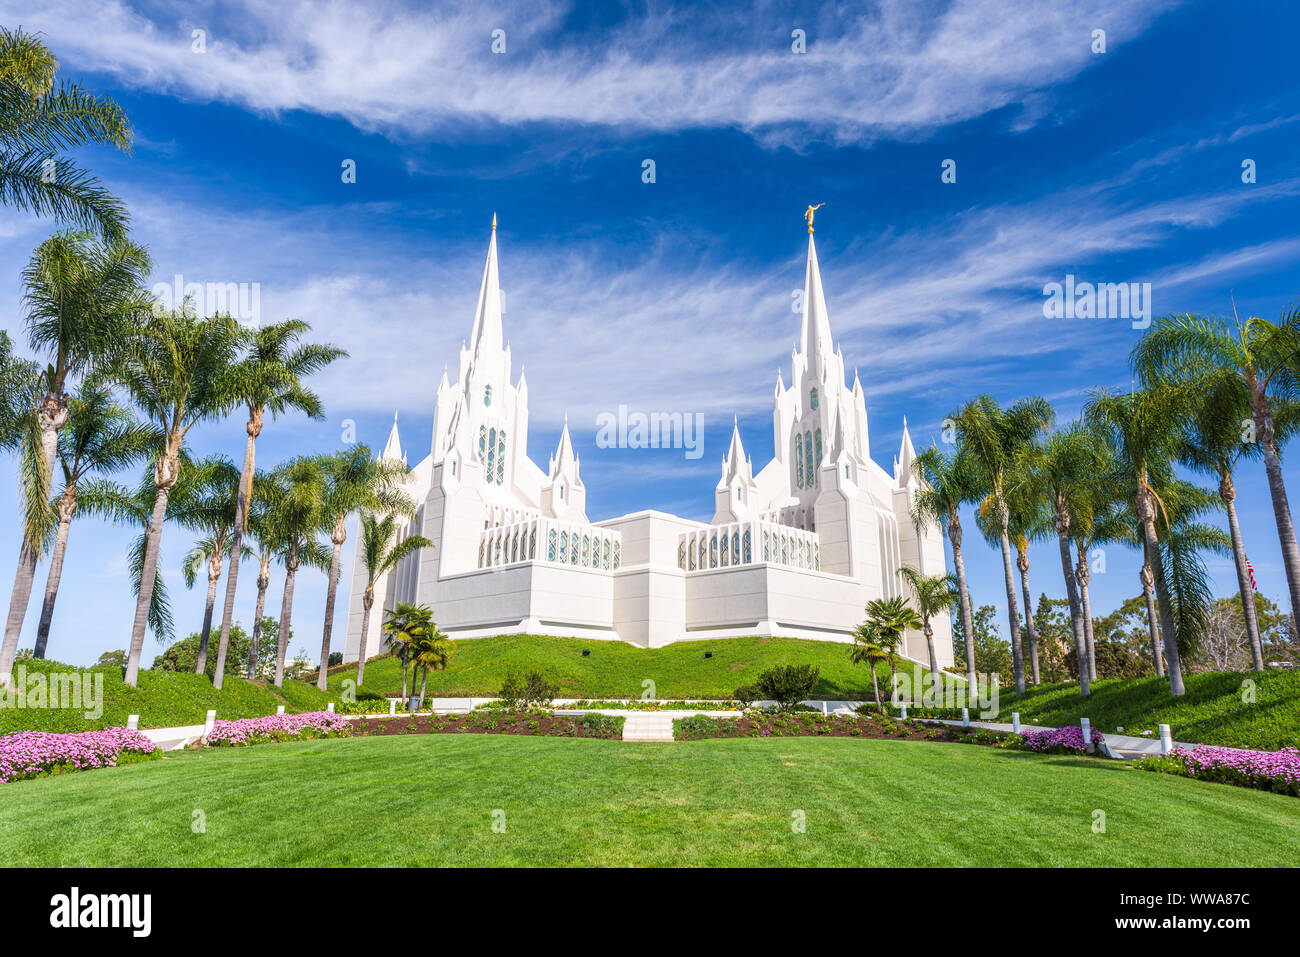 The San Diego California Mormon Temple in La Jolla, California. Stock Photo